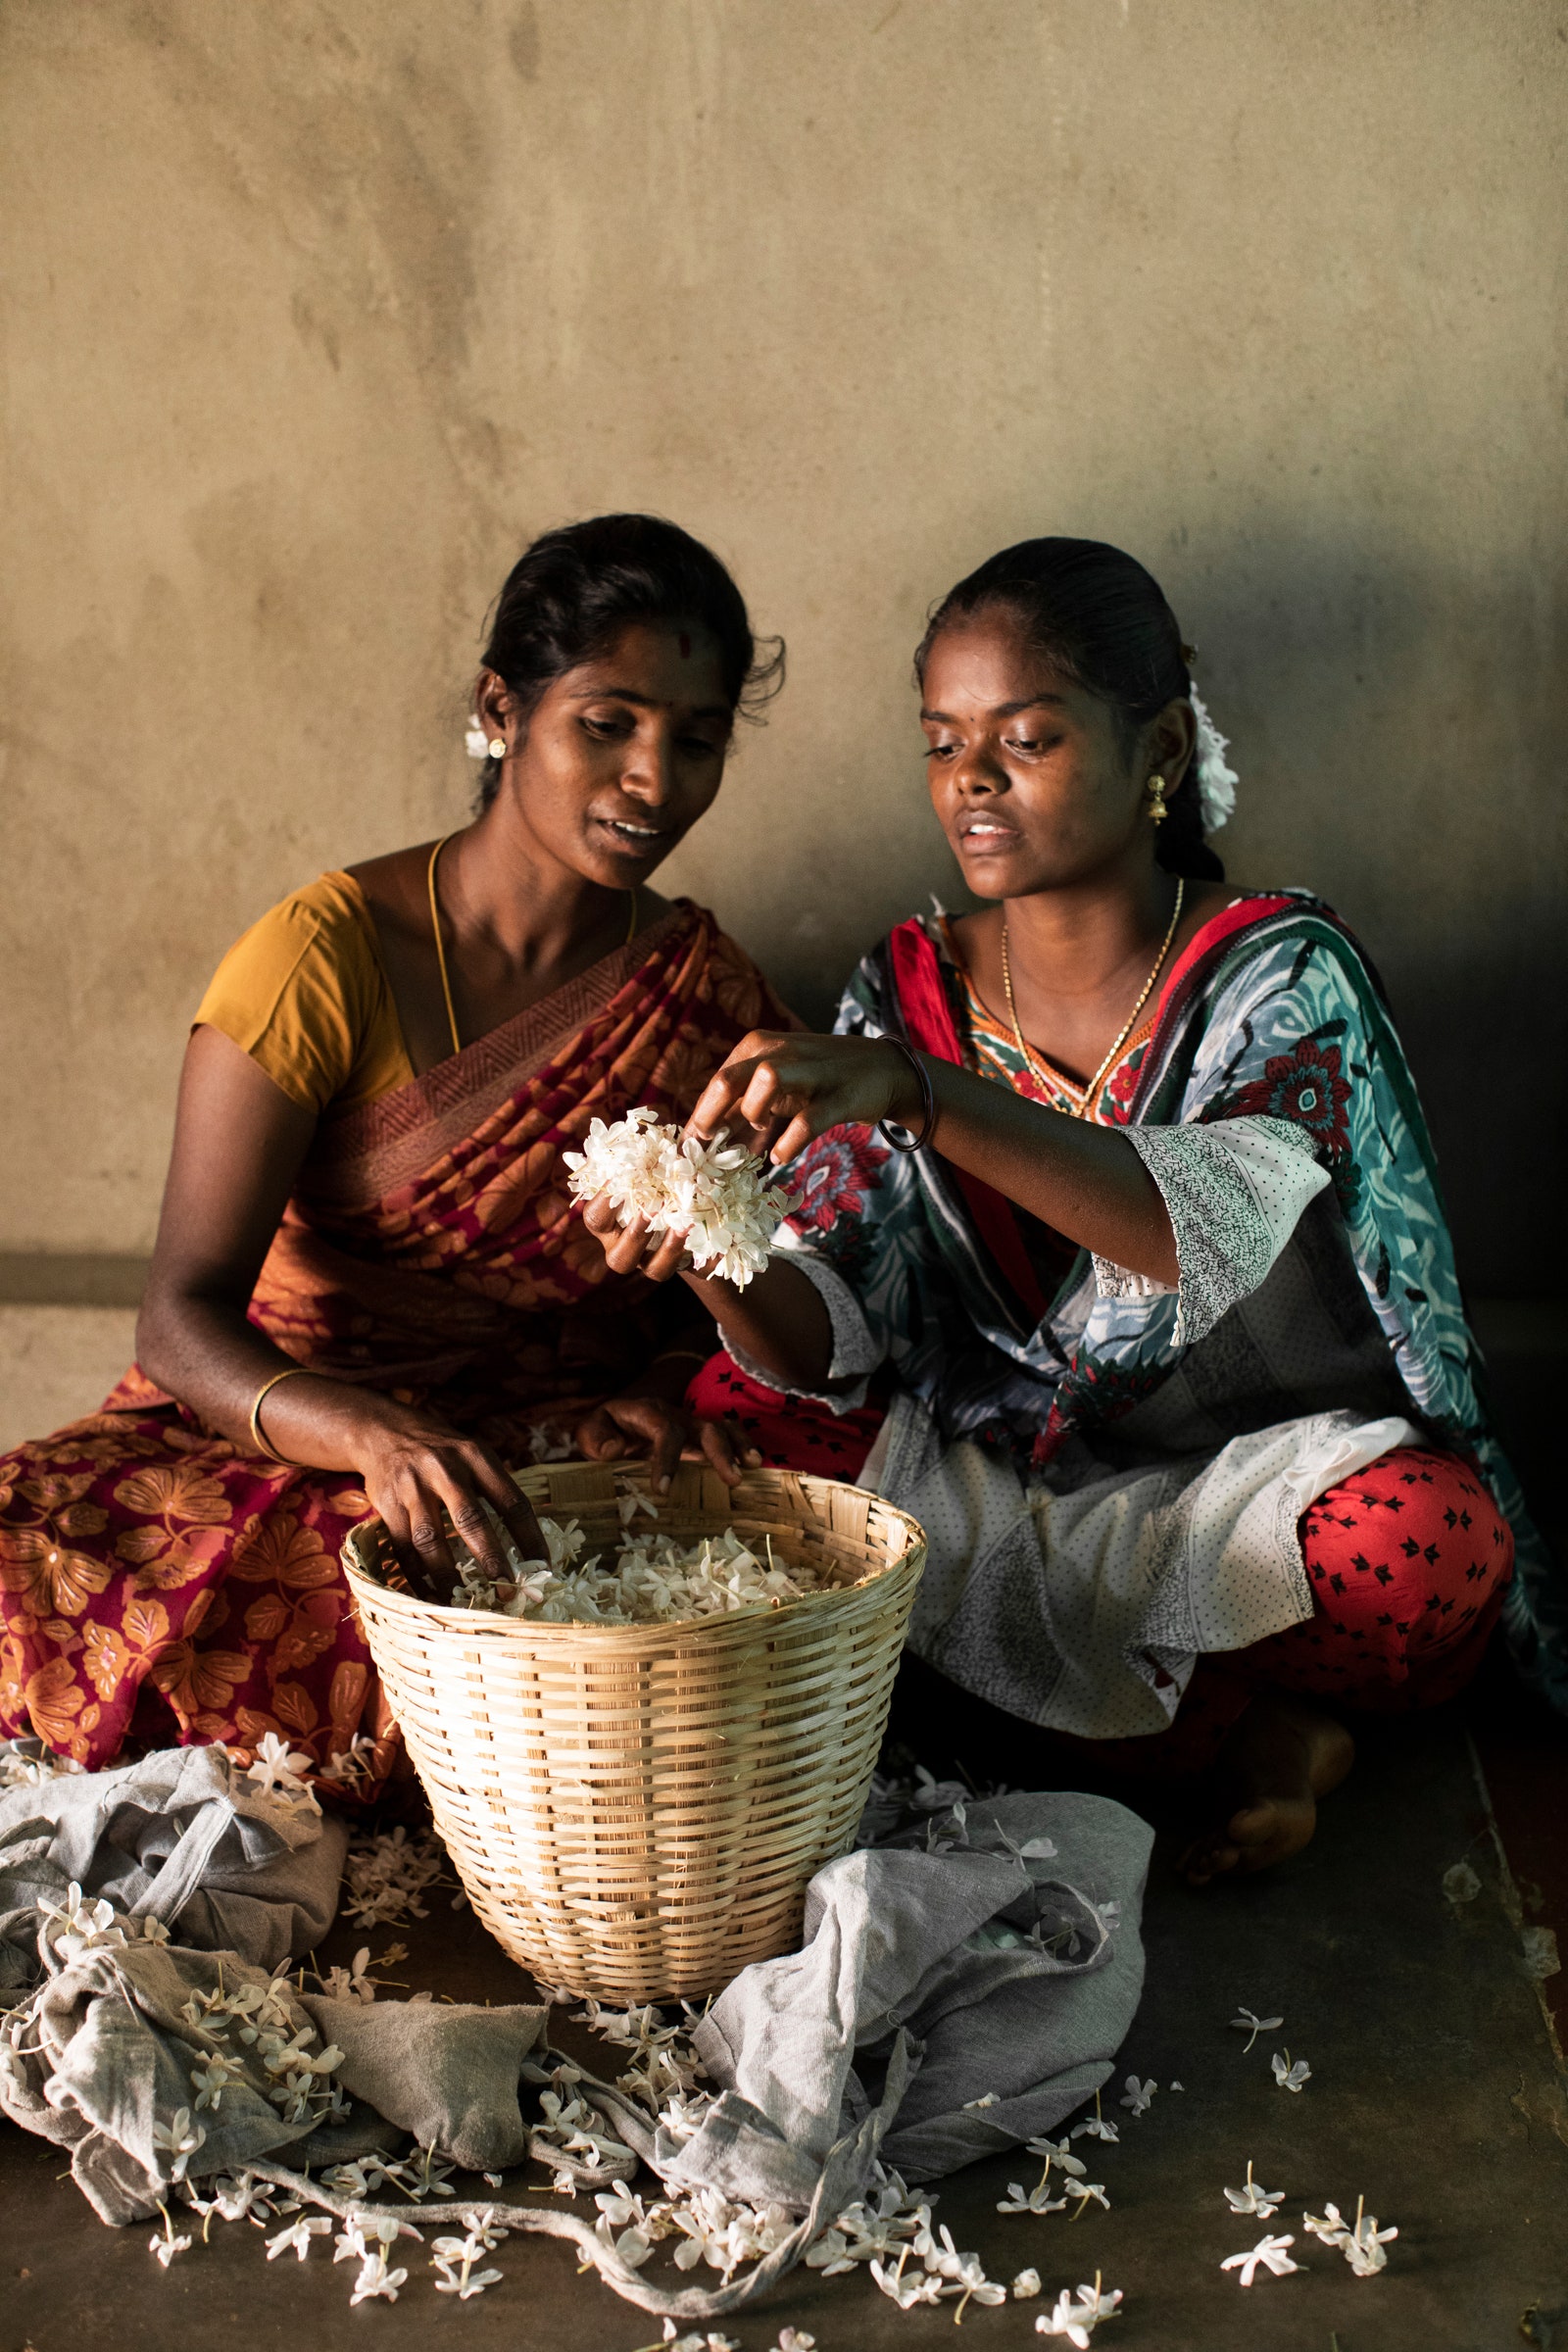 Жасмин для ароматов Bvlgari будет выращен на 100 семейных фермах в Индии